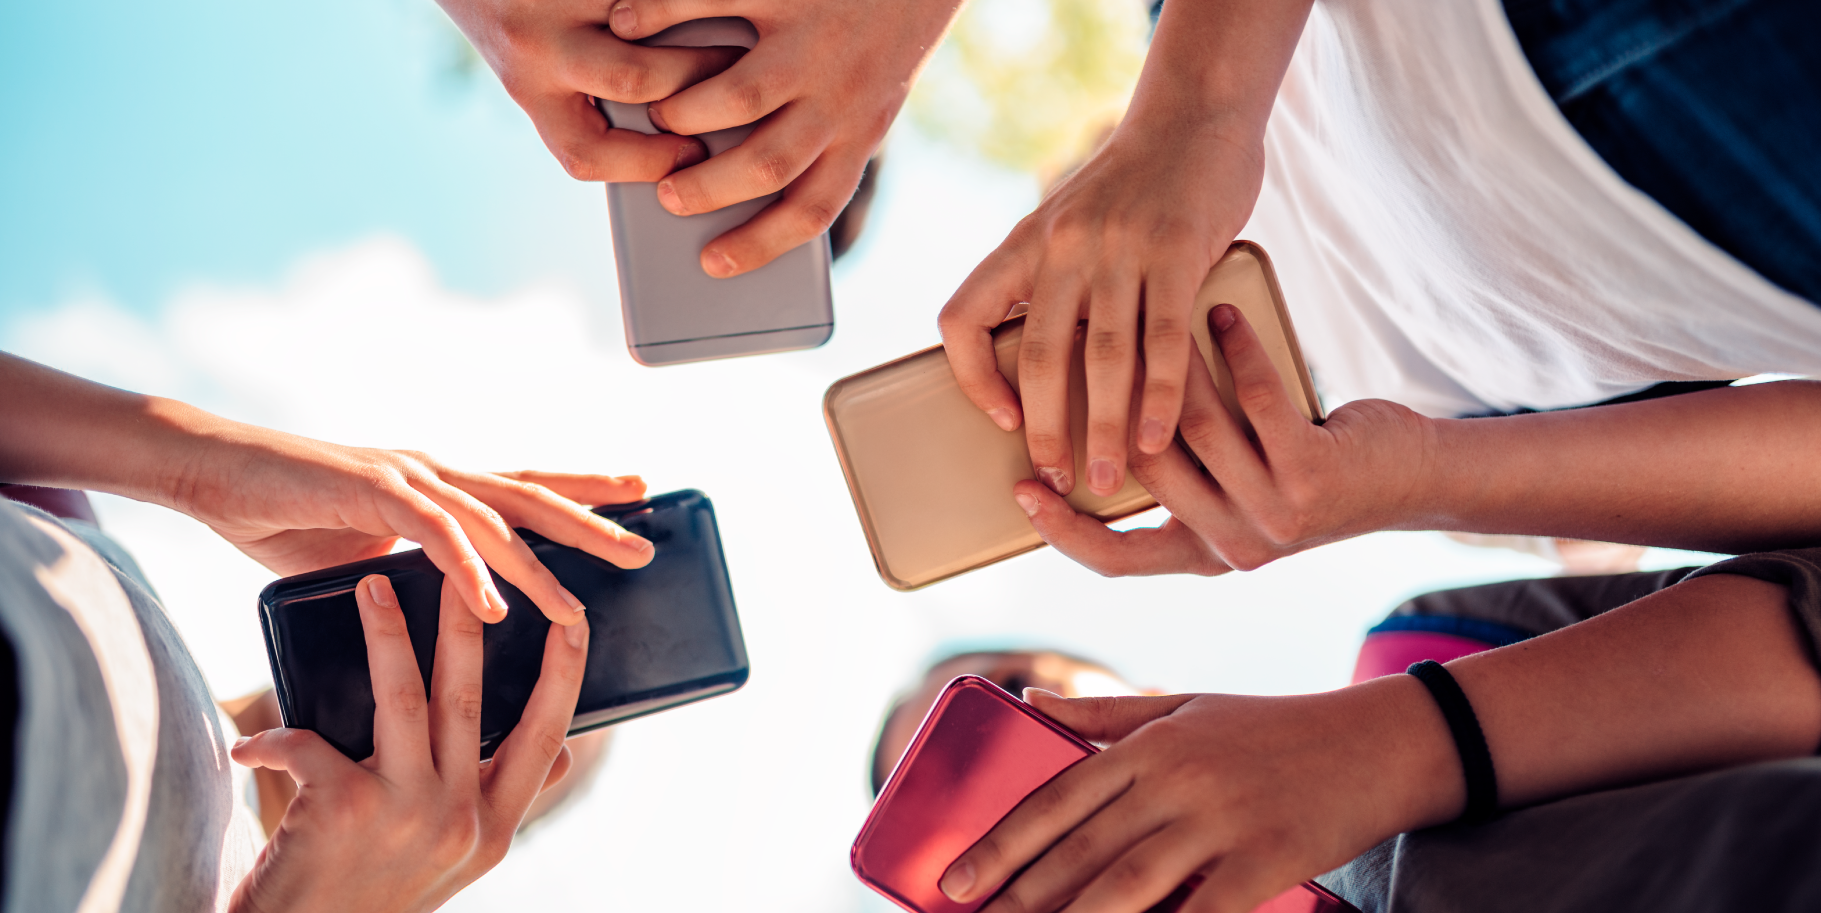 Comprar un móvil de segunda mano: consejos para evitar problemas